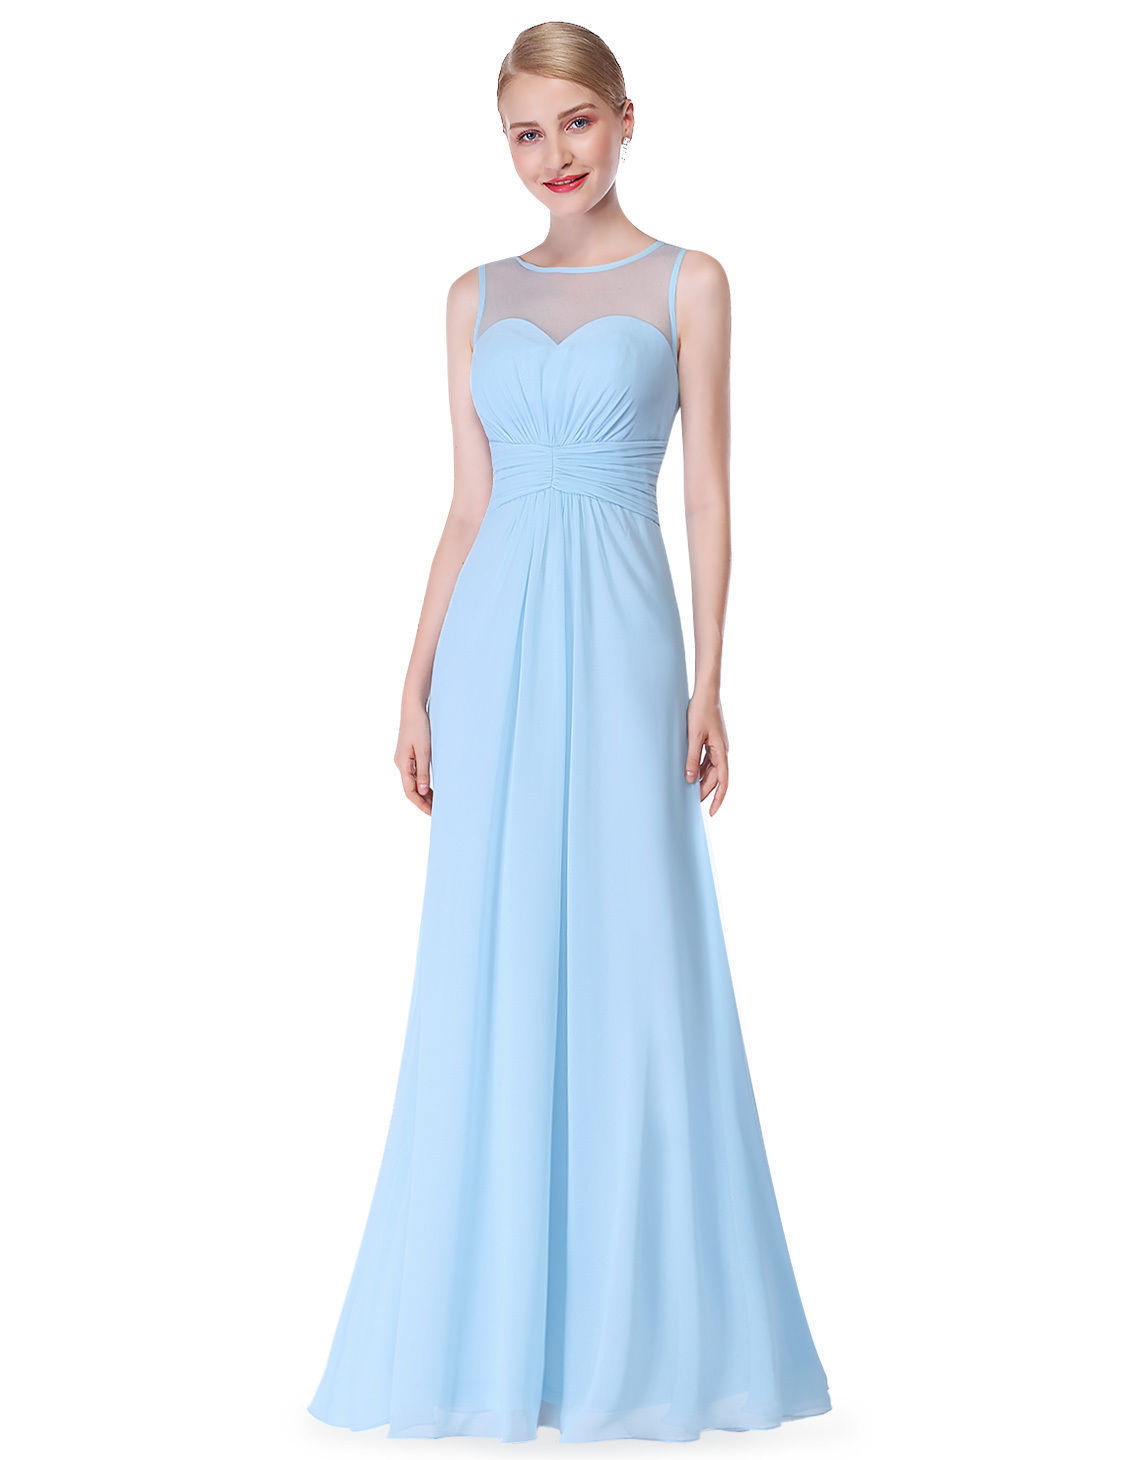 Bledě modré dlouhé společenské šaty 42 XL na svatbu ...